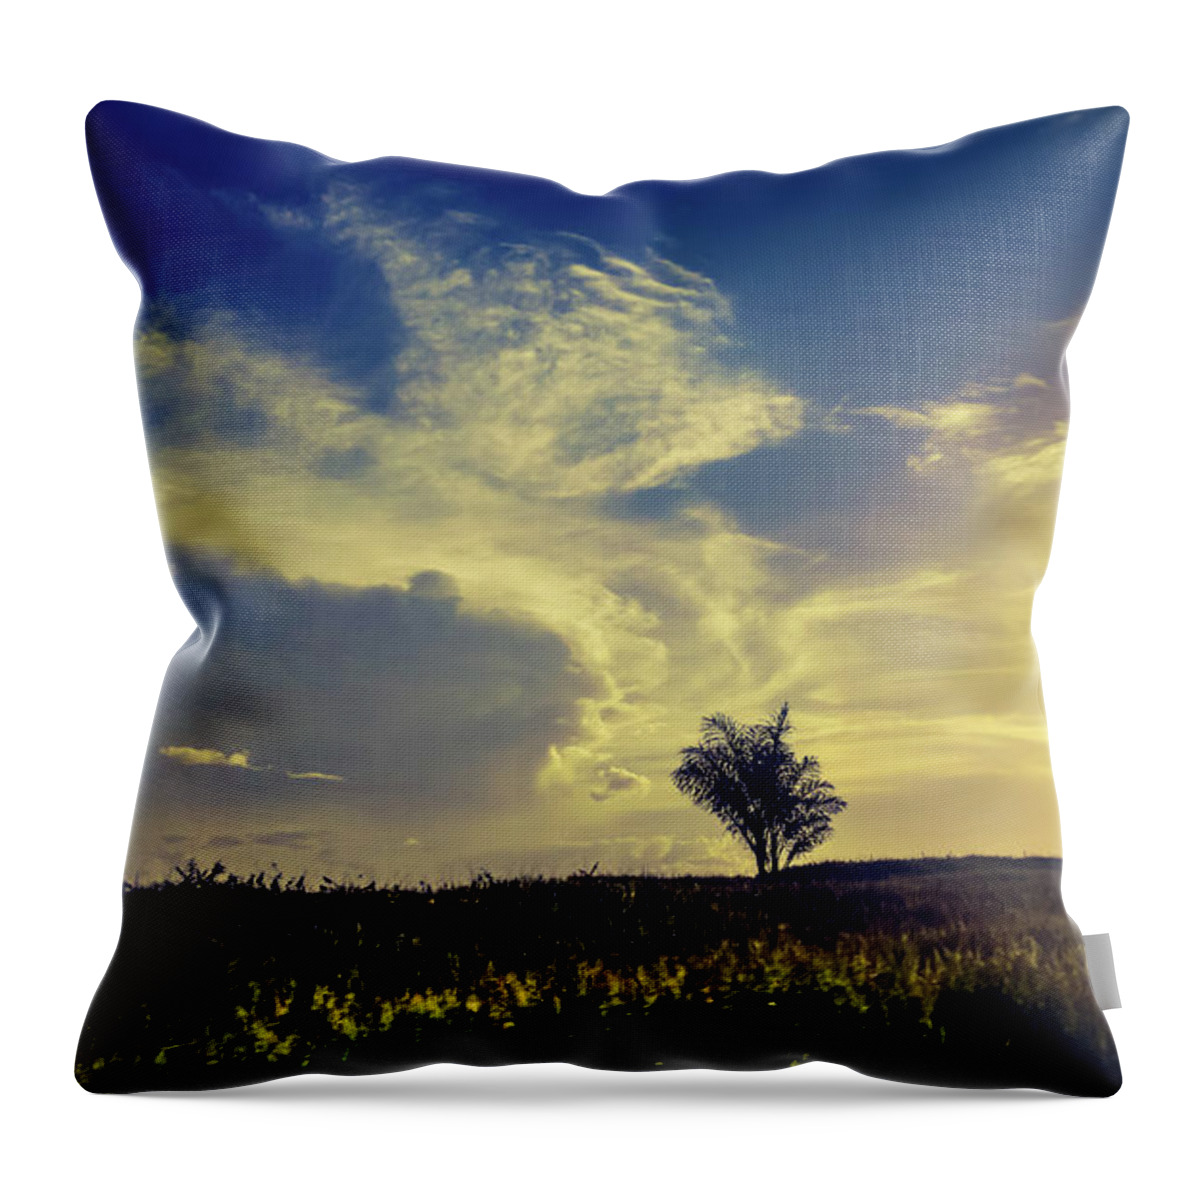  Throw Pillow featuring the photograph Sunset at Kuru Kuru by Sawan Jagnarain